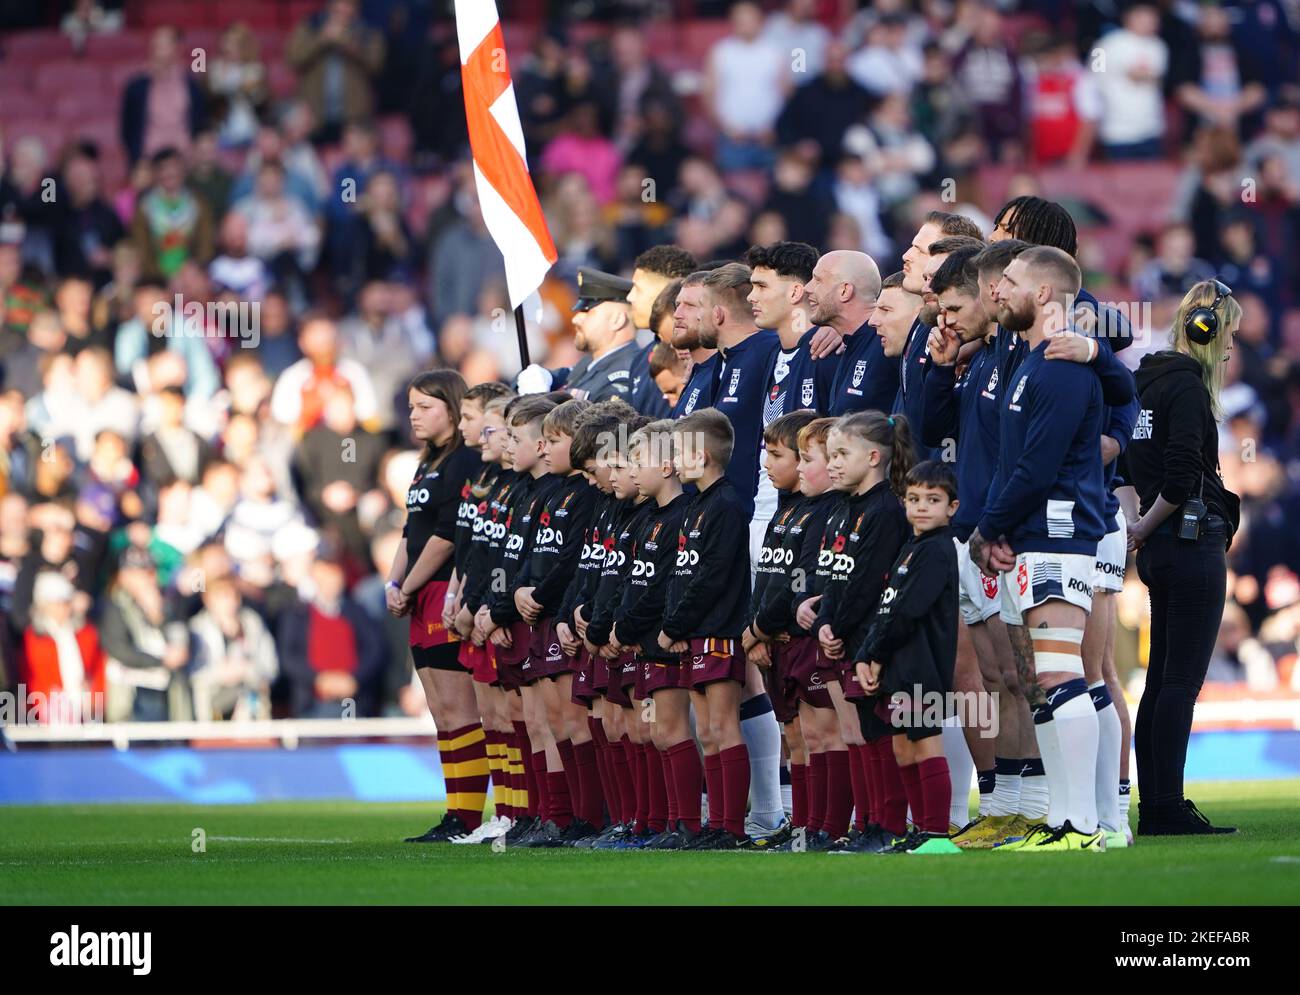 L'Inghilterra si è allineata per gli inni nazionali prima della partita di semi-finale della Coppa del mondo di Rugby all'Emirates Stadium, Londra. Data immagine: Sabato 12 novembre 2022. Foto Stock